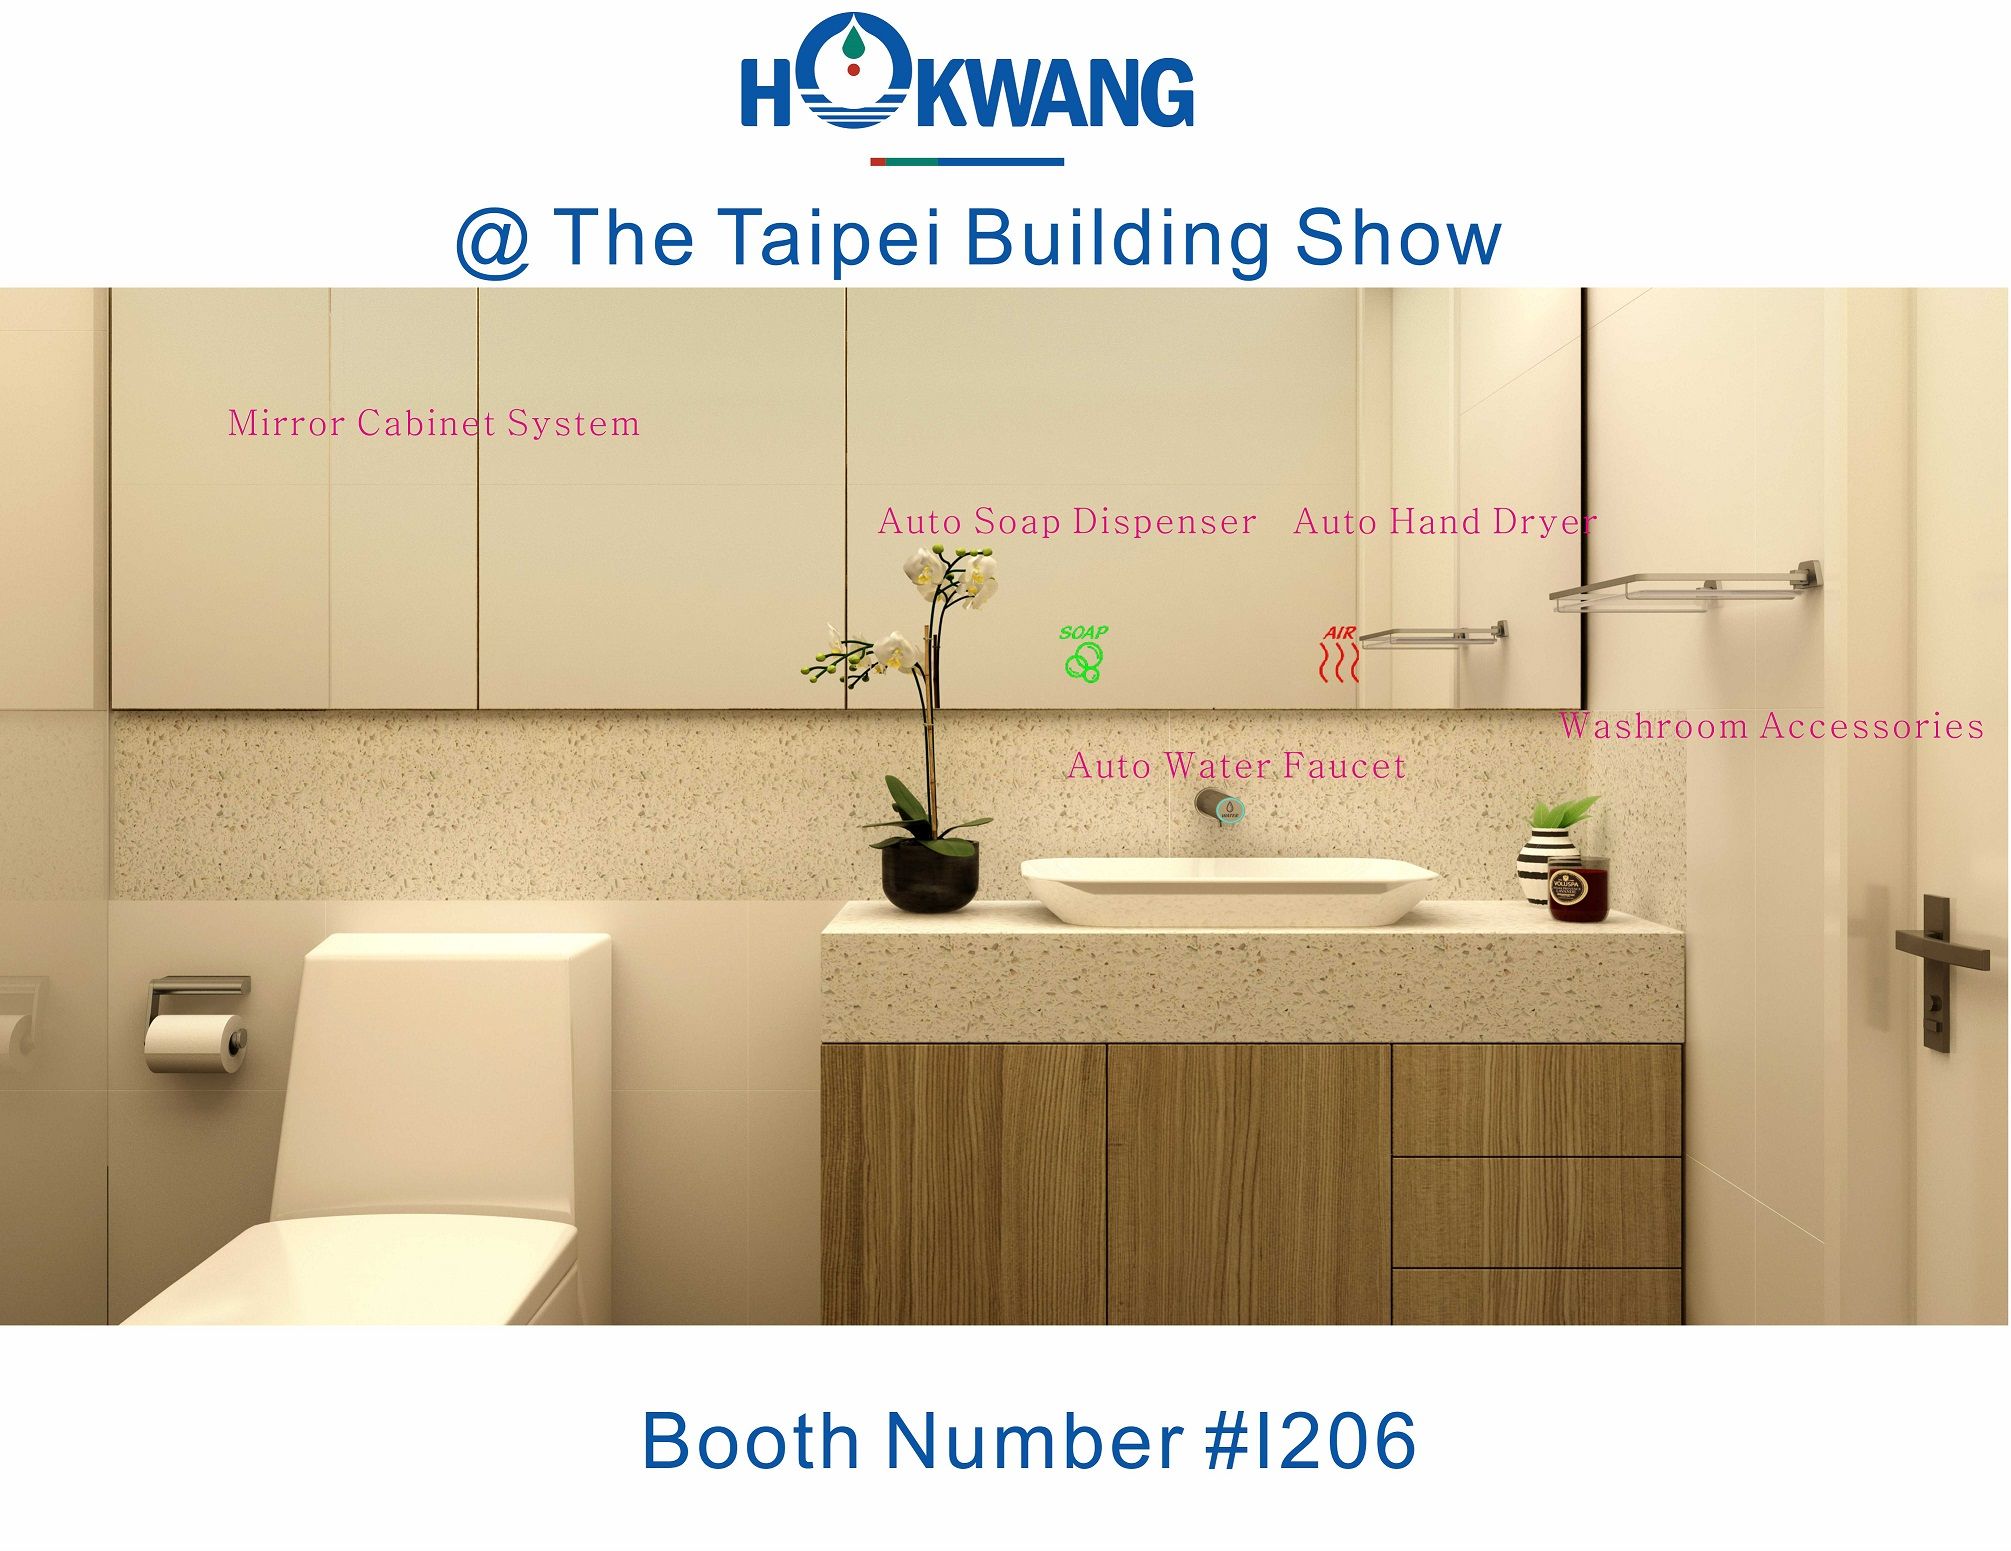 Hokwang sa zúčastní Taipei Building Show 2018